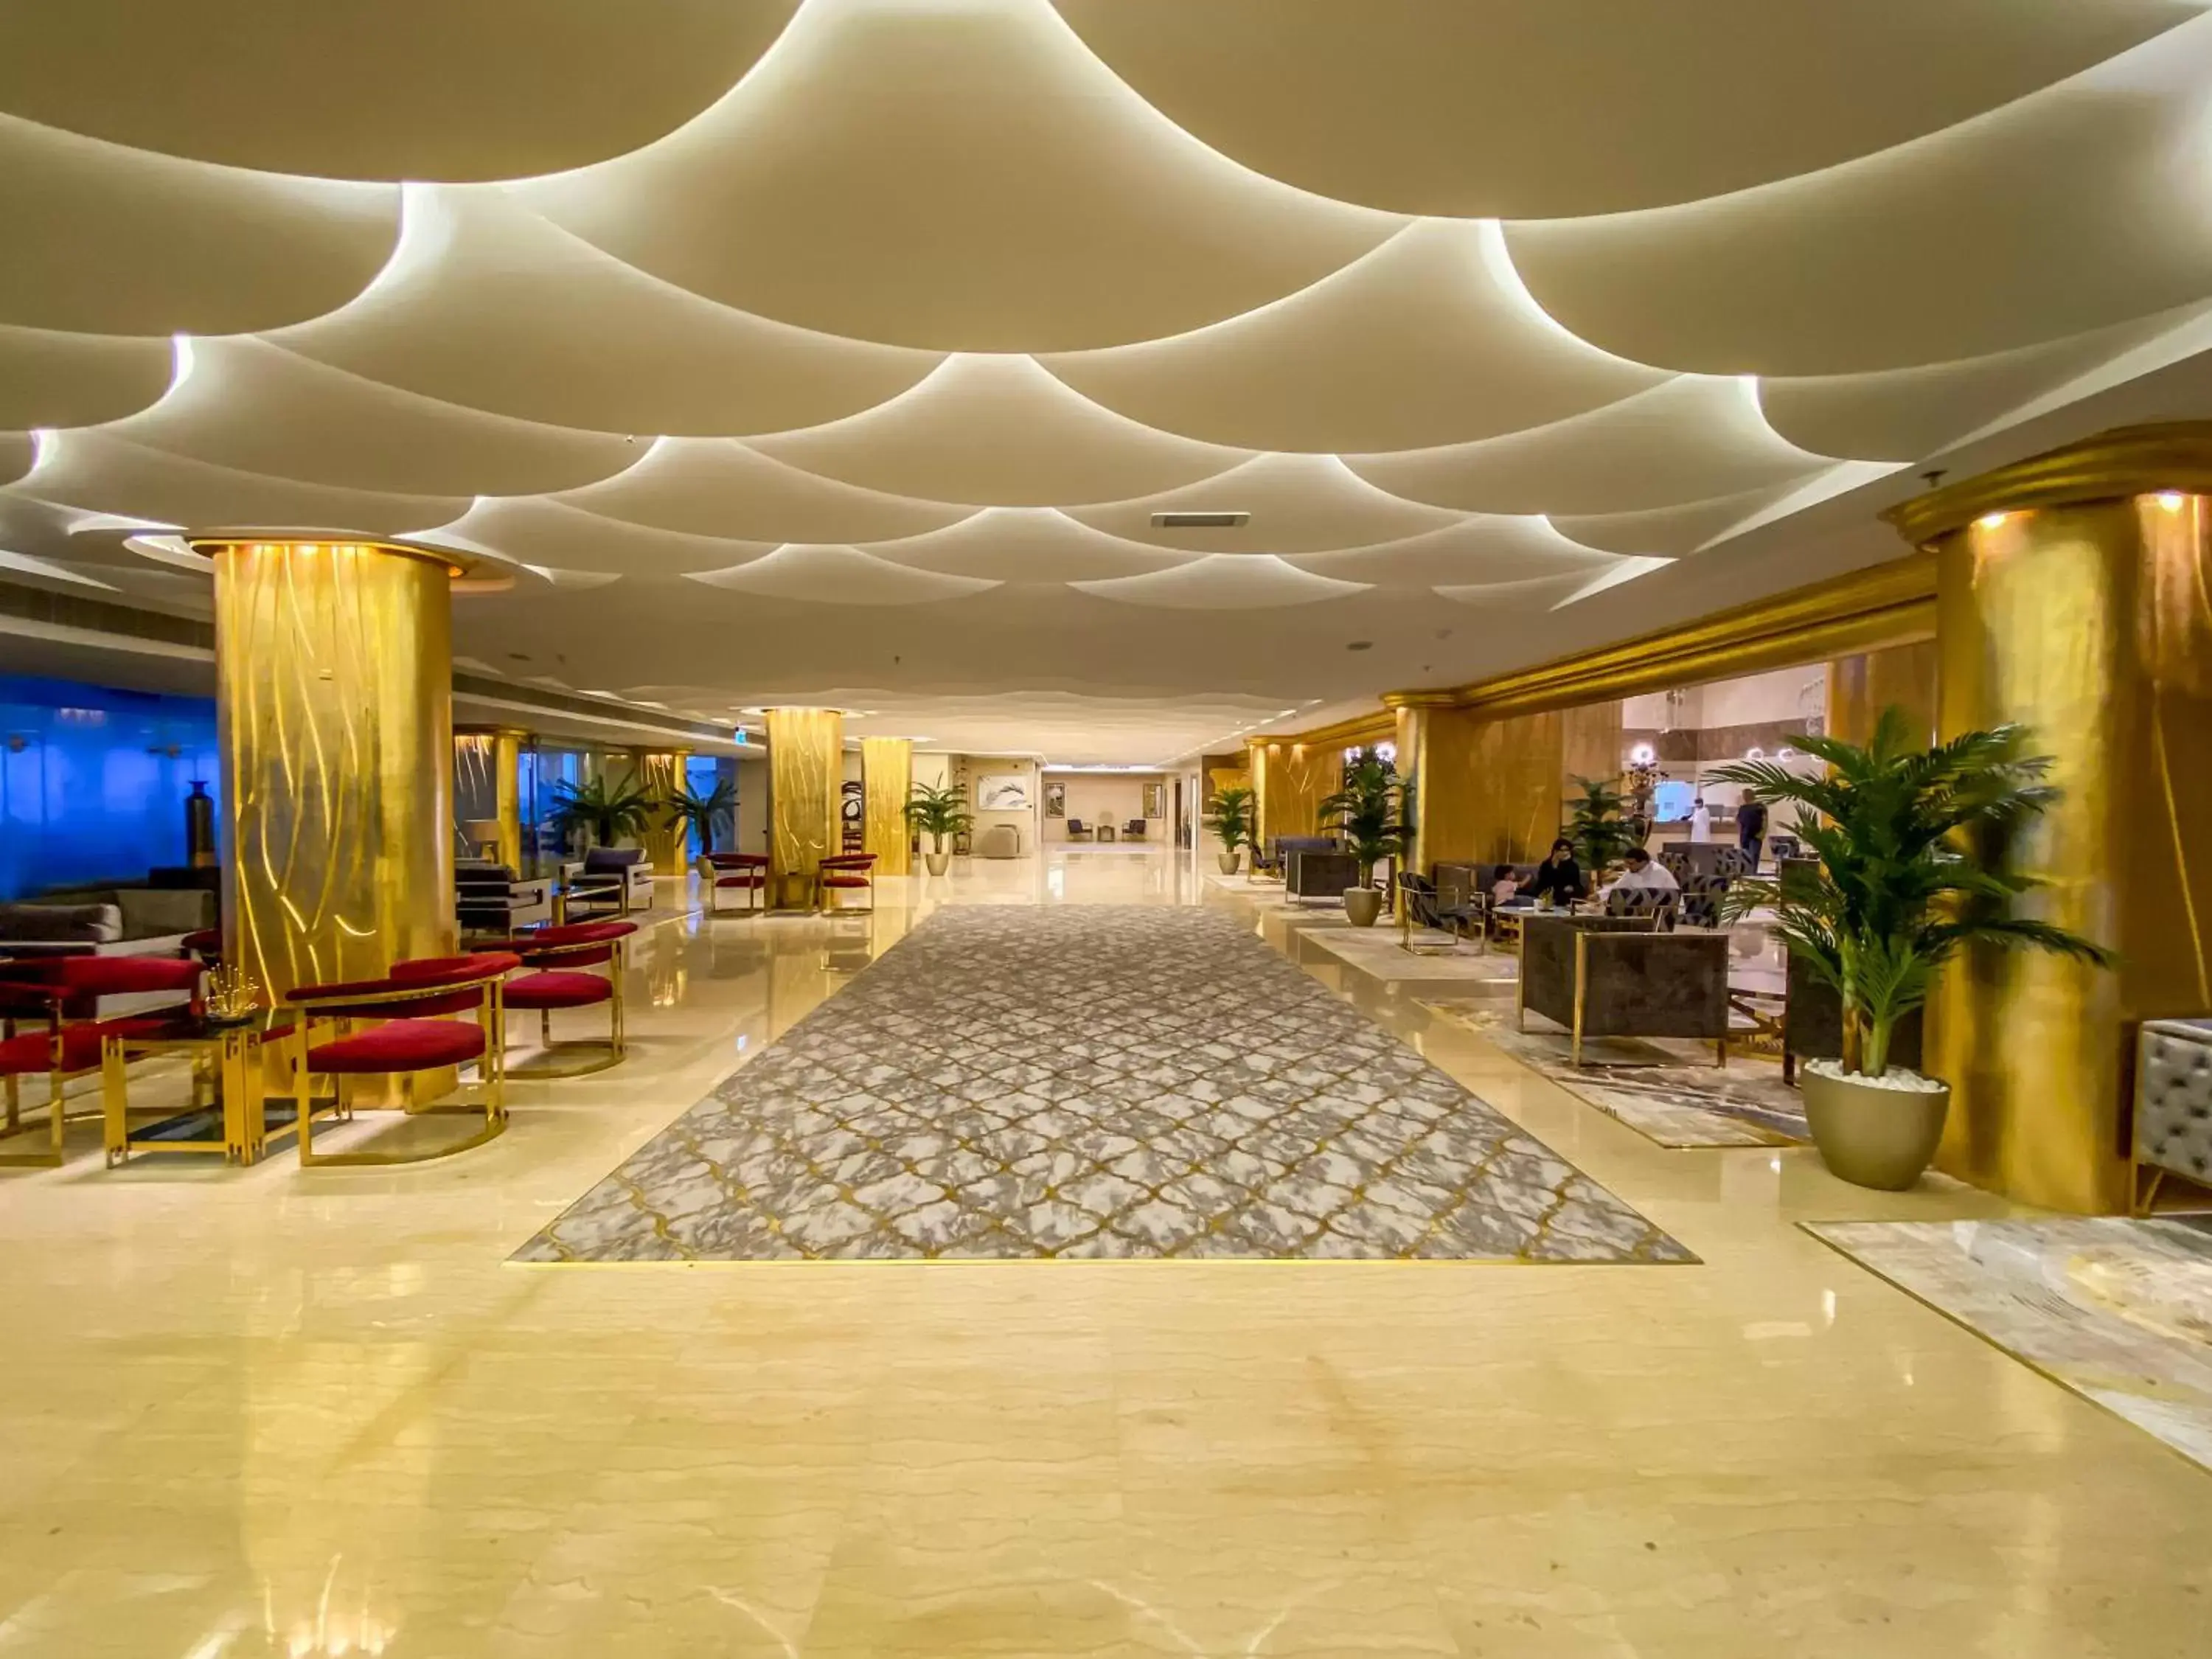 Lobby or reception in Mirage Bab Al Bahr Beach Hotel